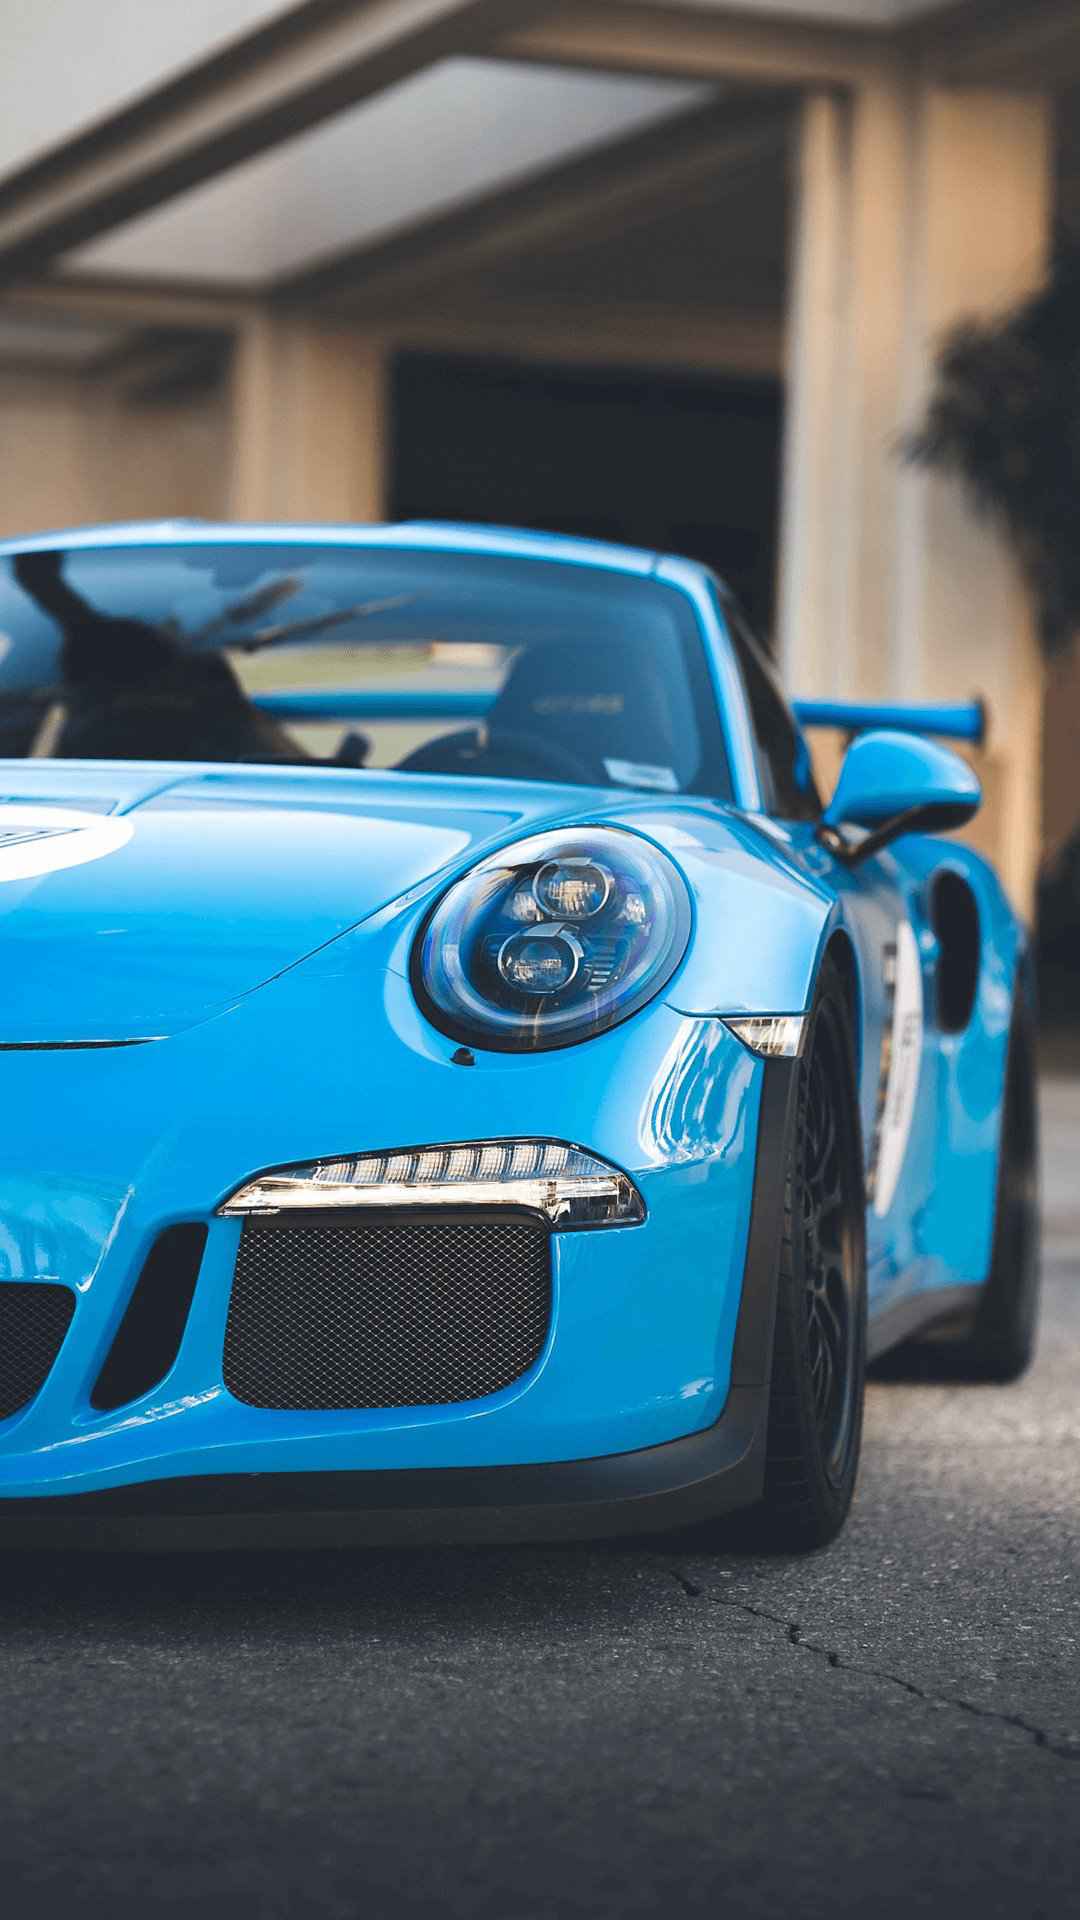 Porsche Iphone Wallpapers